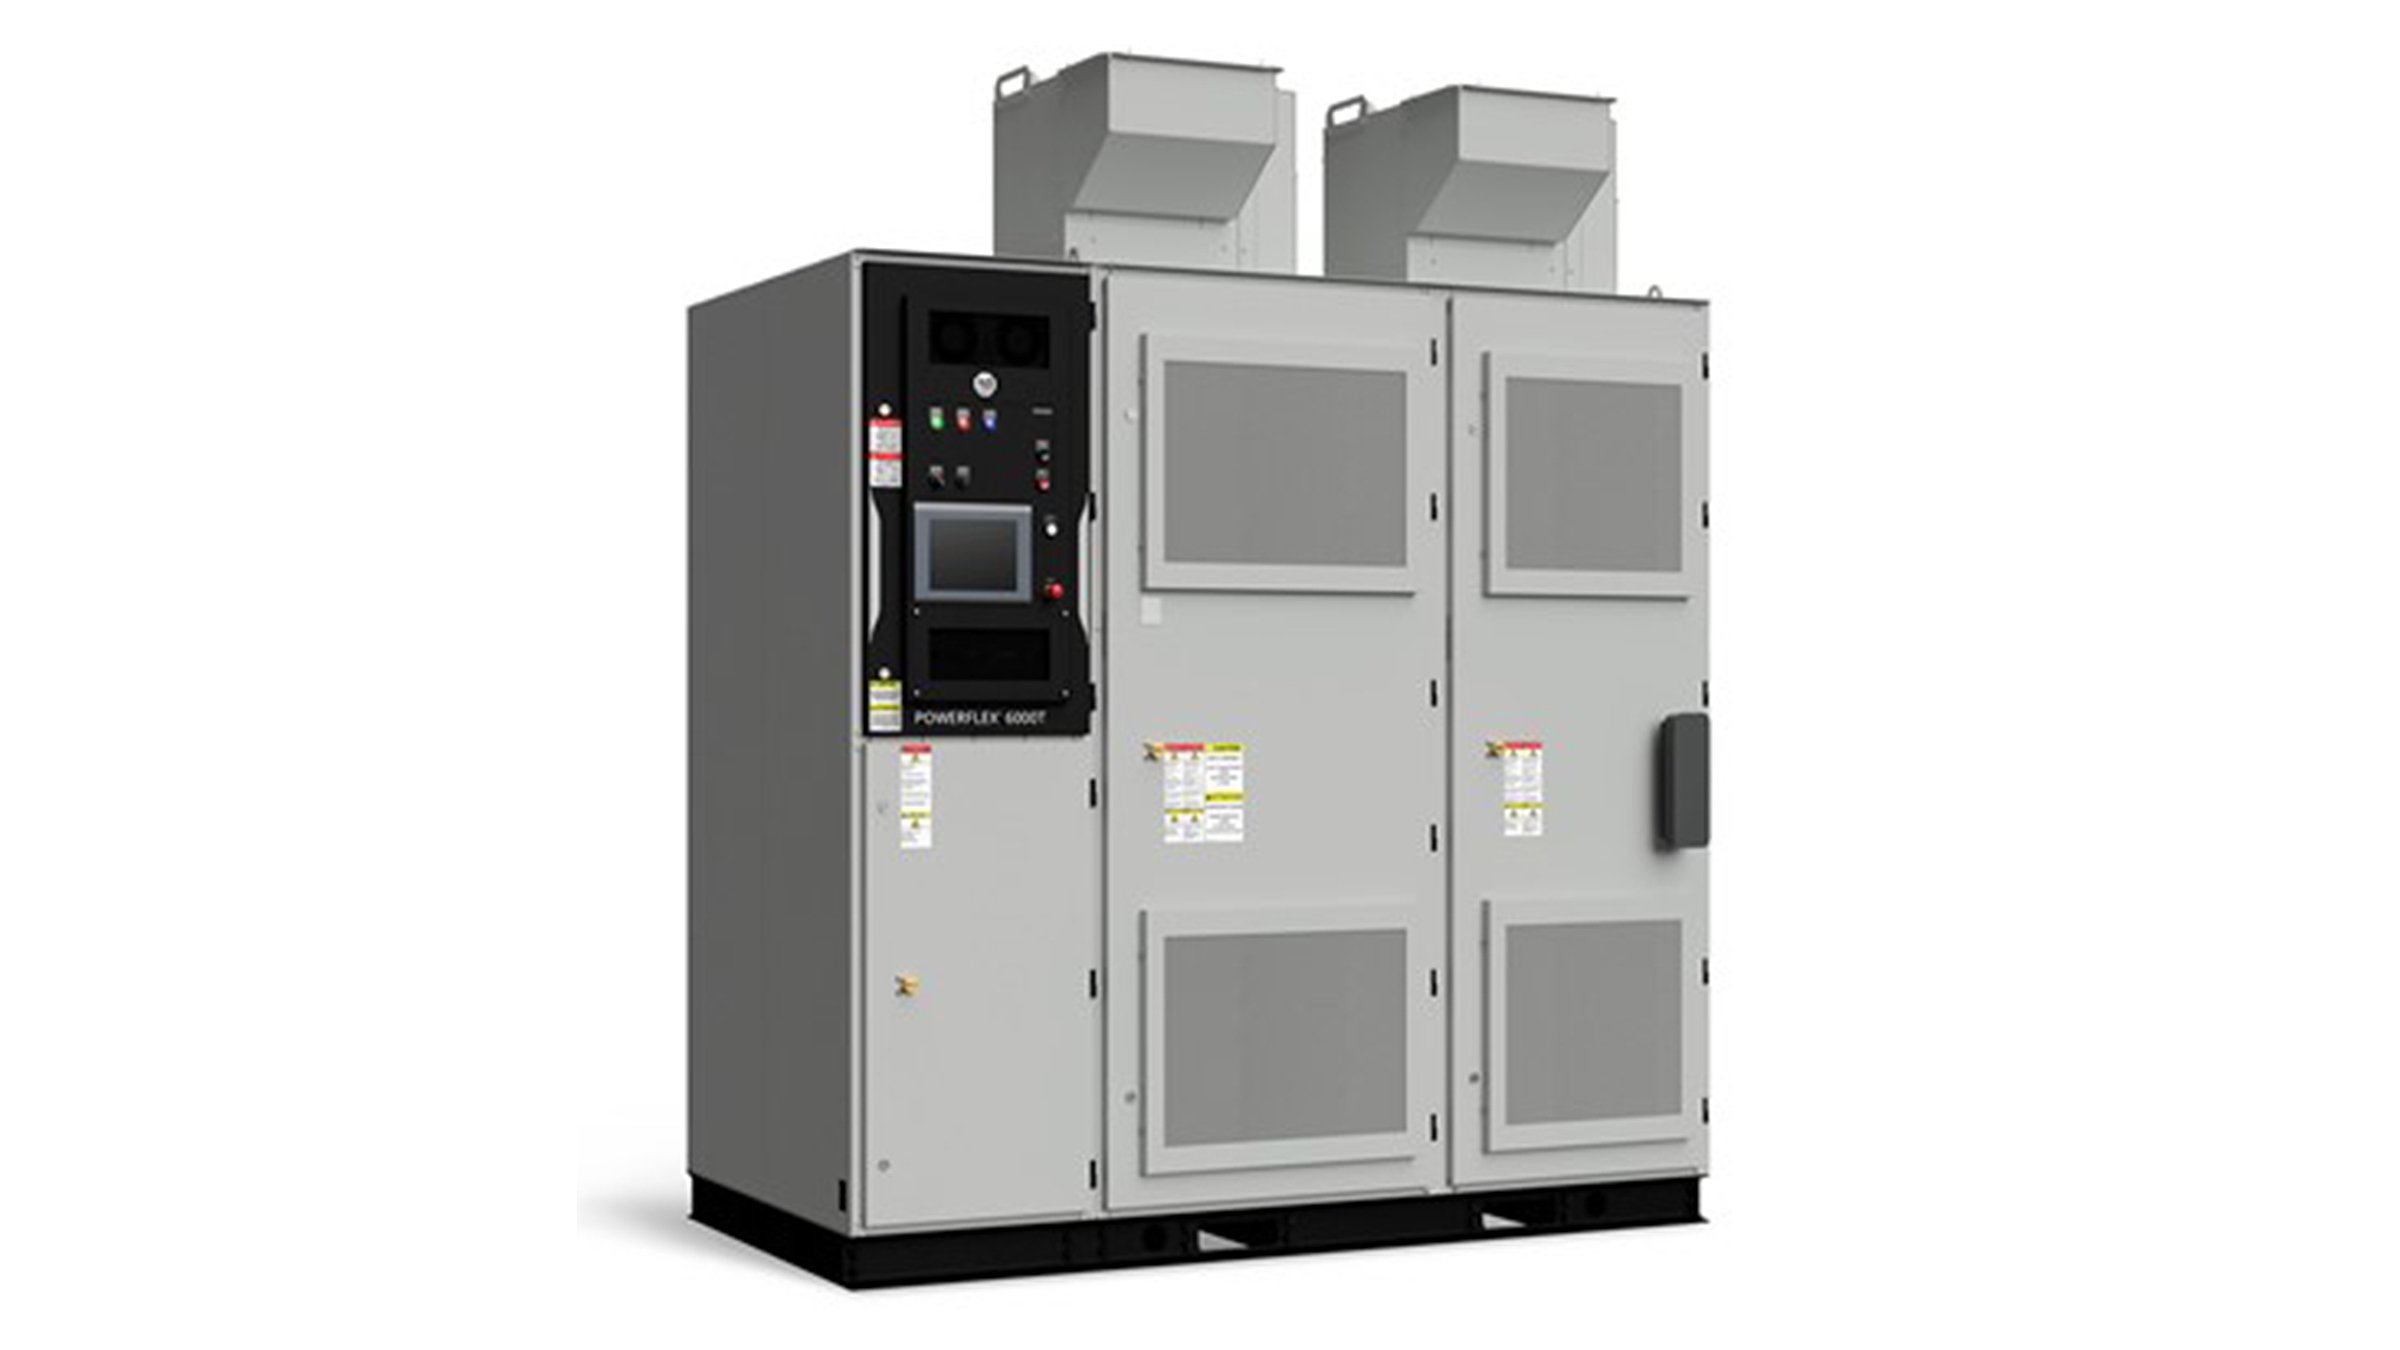 Tres gabinetes metálicos altos y grises, uno al lado del otro, componen el variador de velocidad PowerFlex 6000T de Rockwell Automation, utilizado para controlar motores en aplicaciones industriales pesadas.